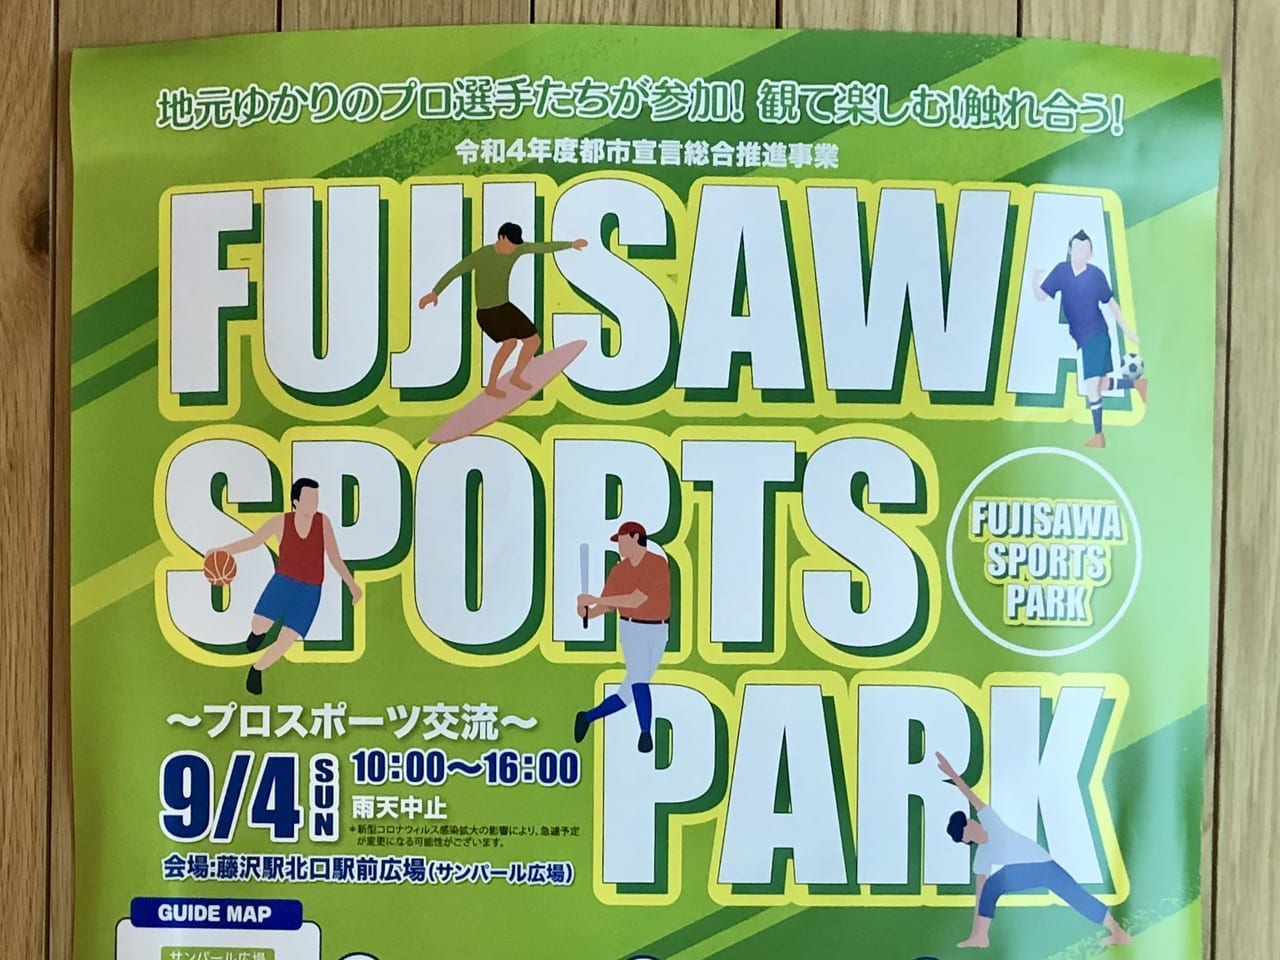 FUJISAWA SPORTS PARK